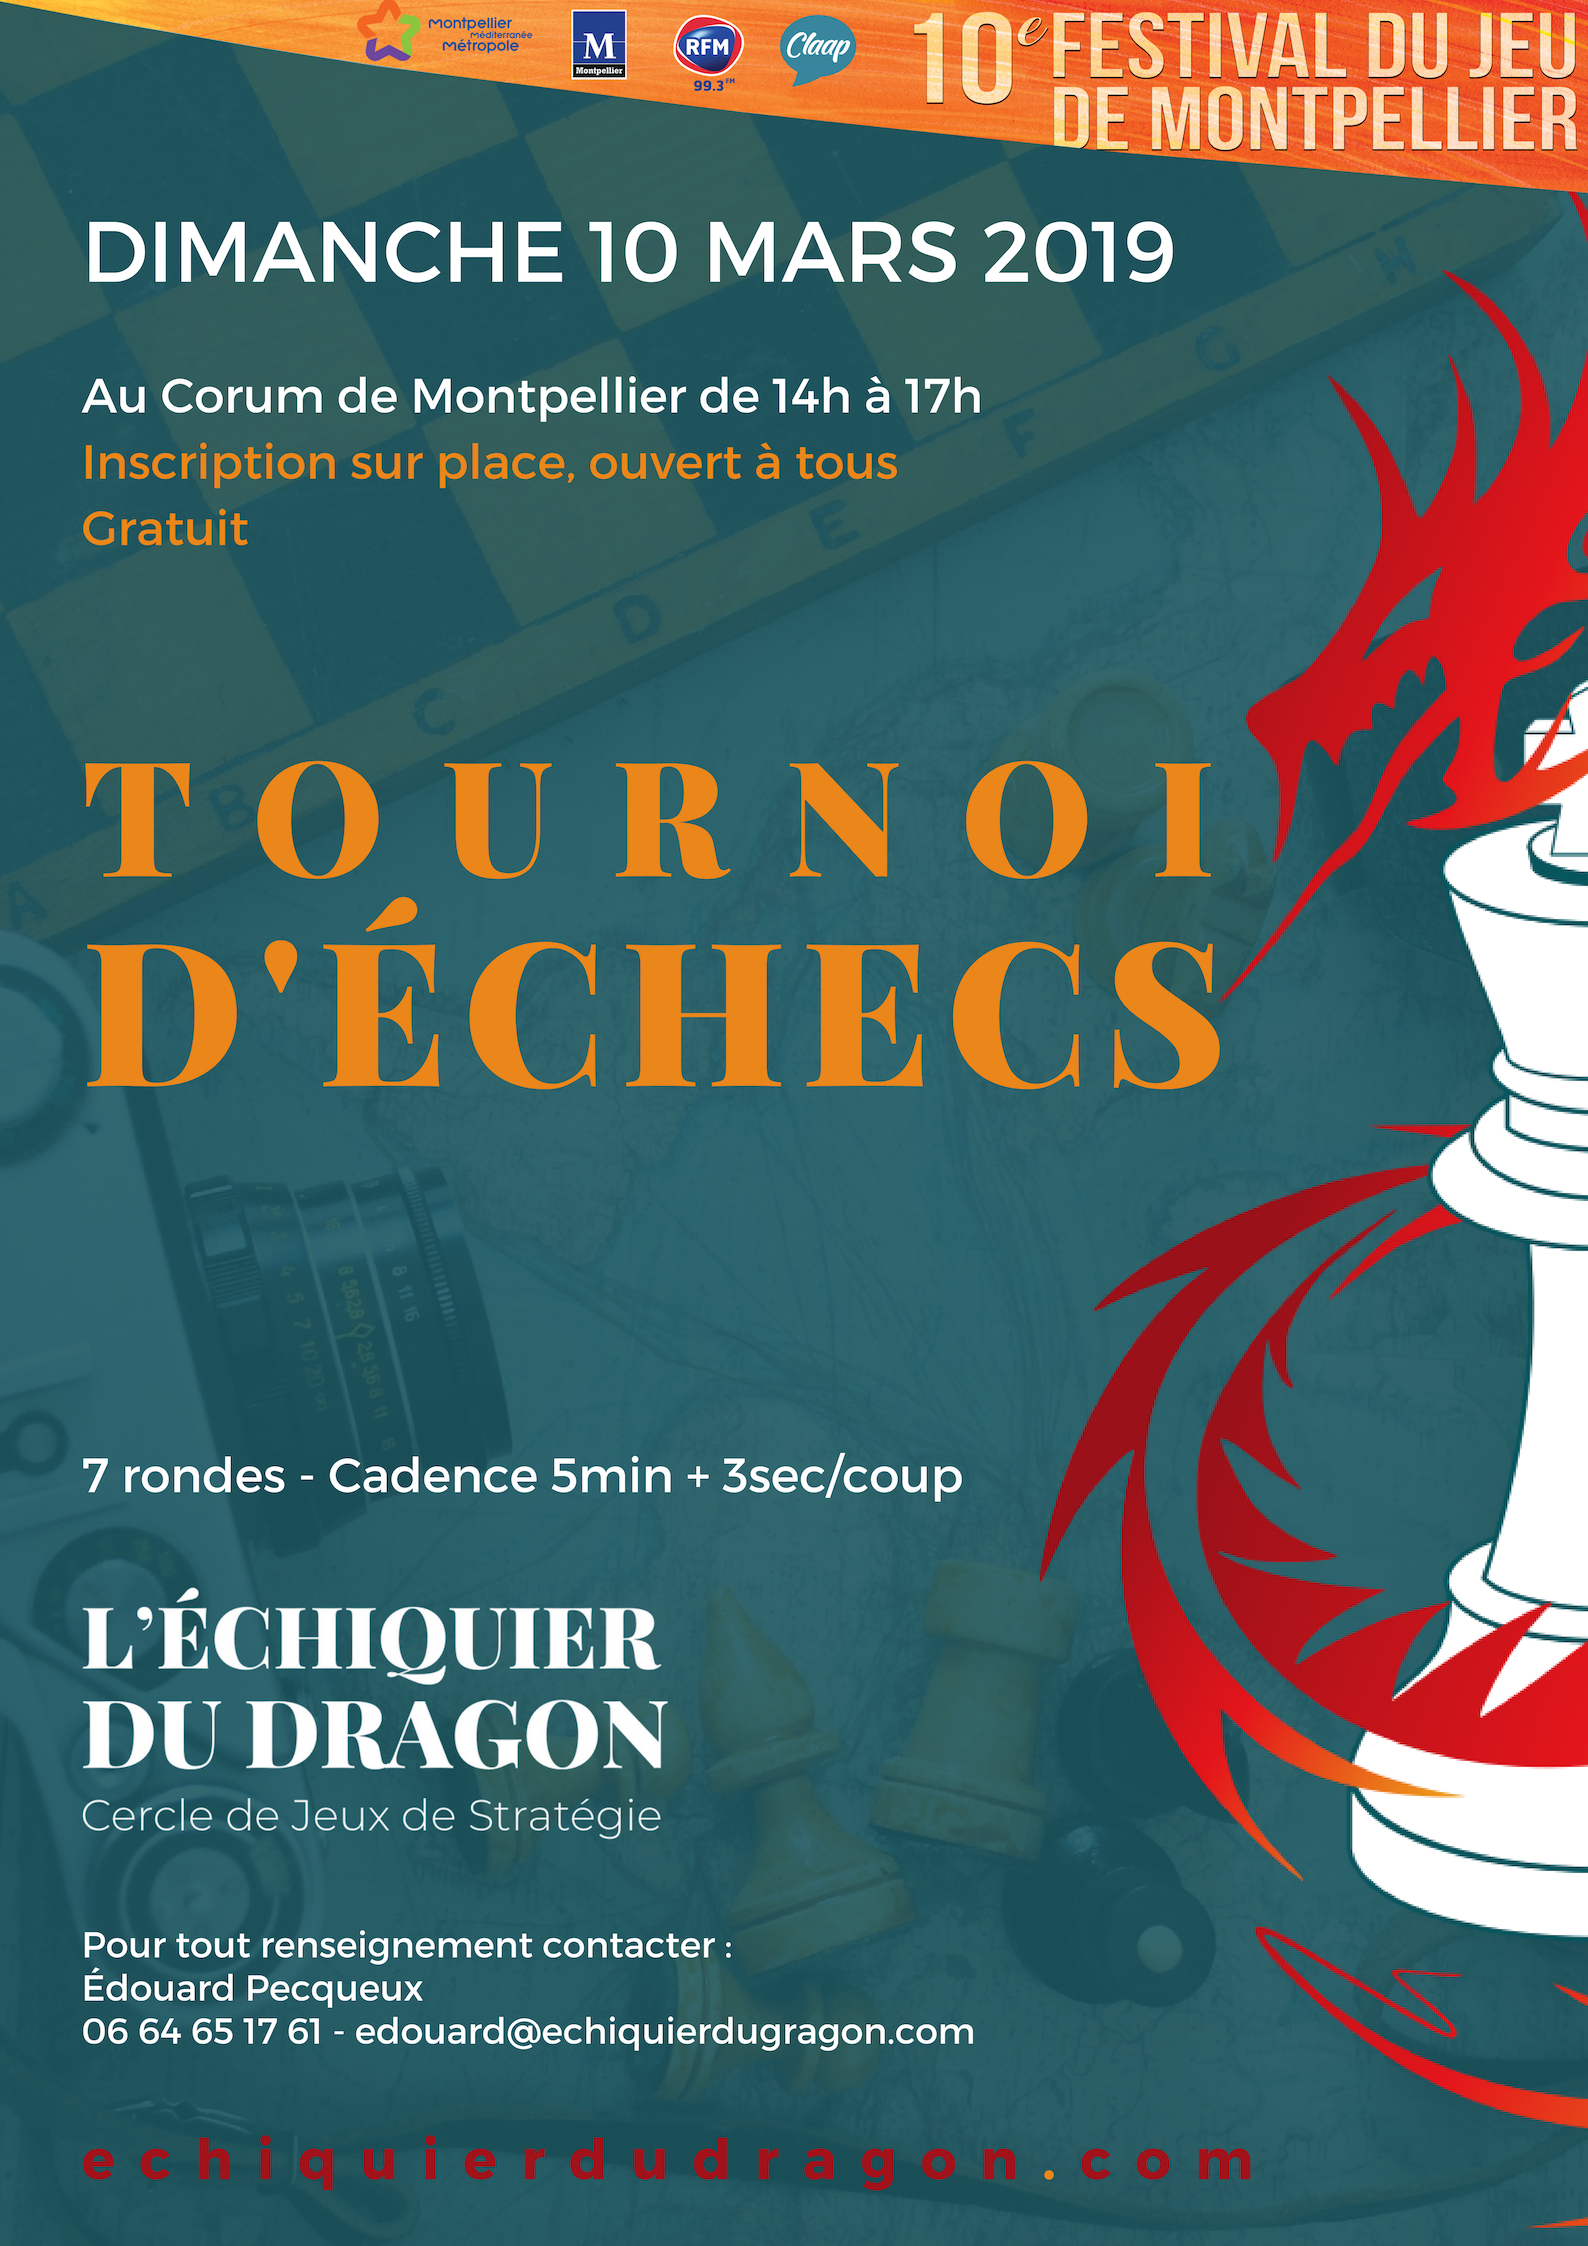 Tournoi d’échecs durant le festival du jeux de Montpellier – 10 mars 2019